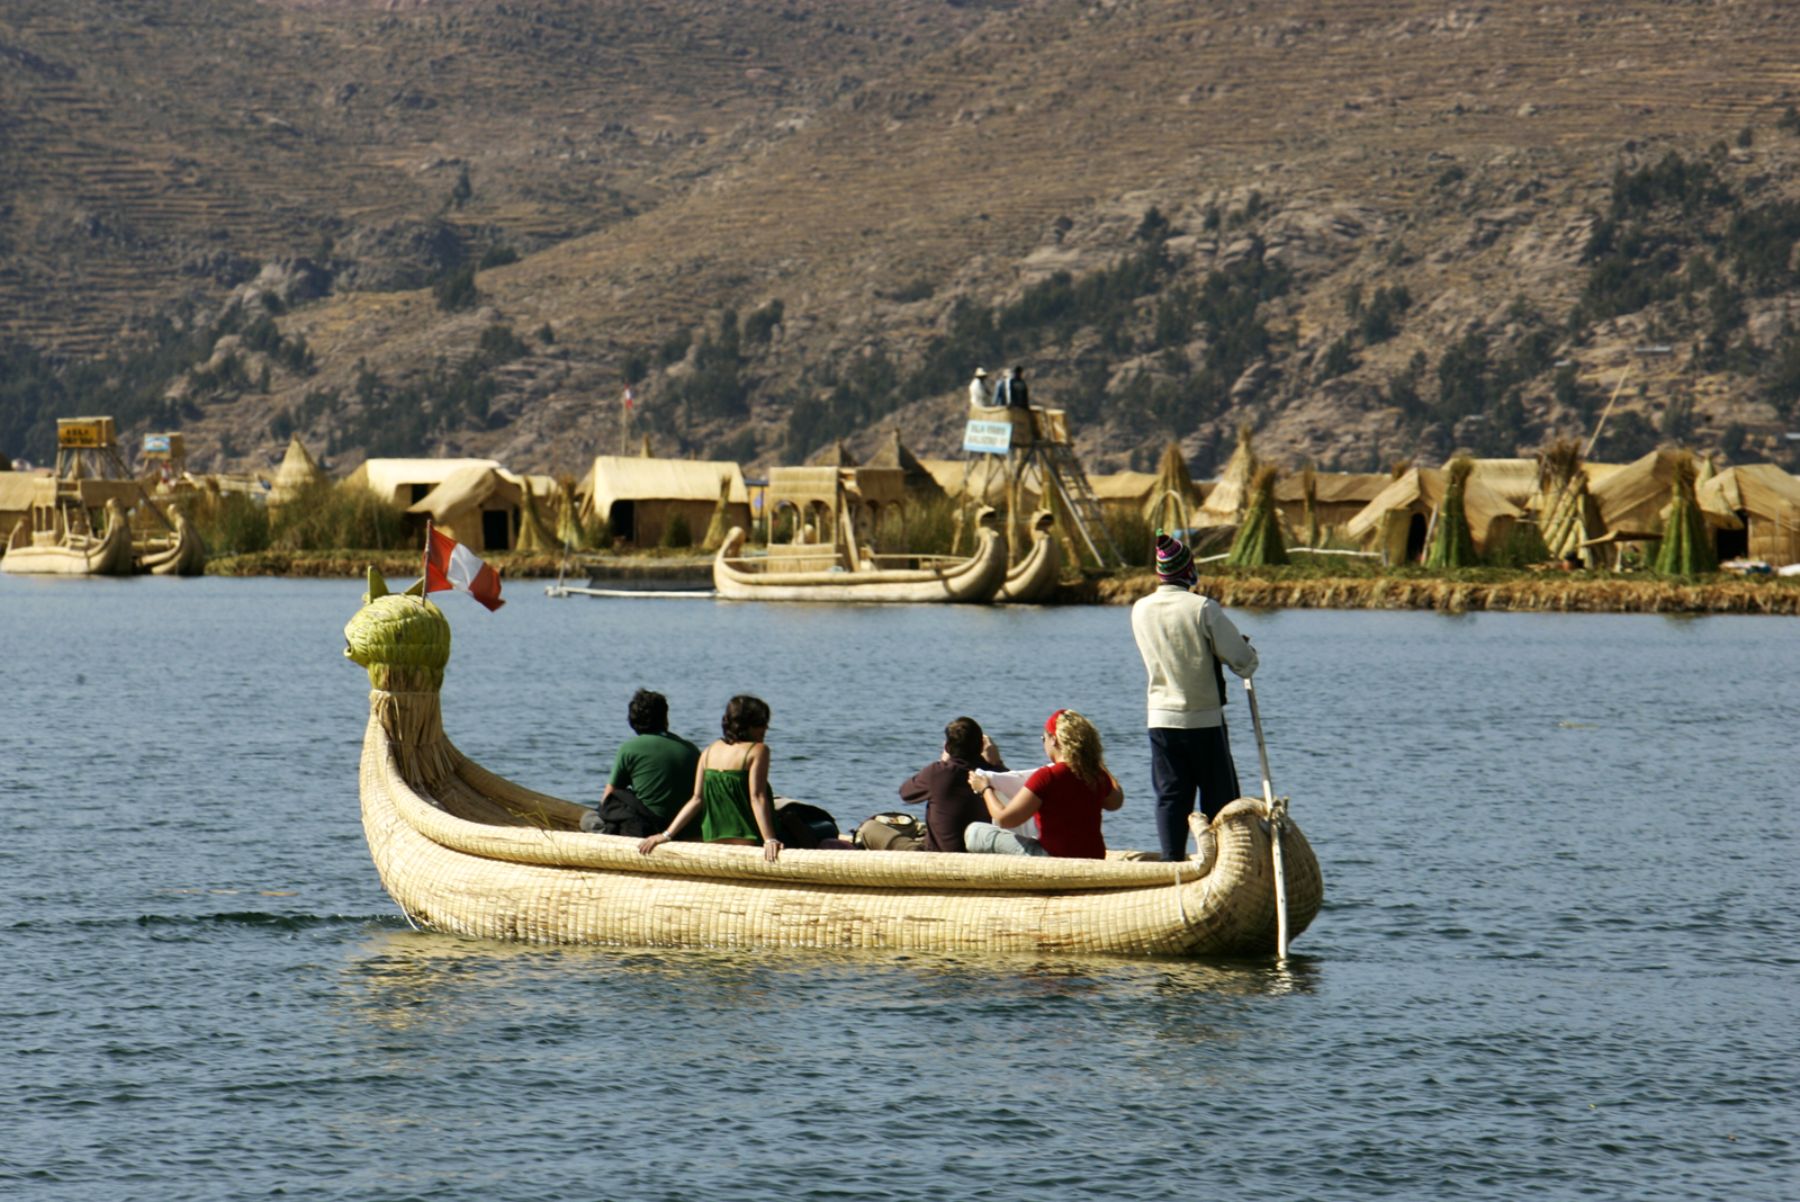 El imponente lago Titicaca, es símbolo de Puno y lugar que alberga una gran riqueza natural y poblaciones con tradición cultural ancestral. ANDINA/archivo